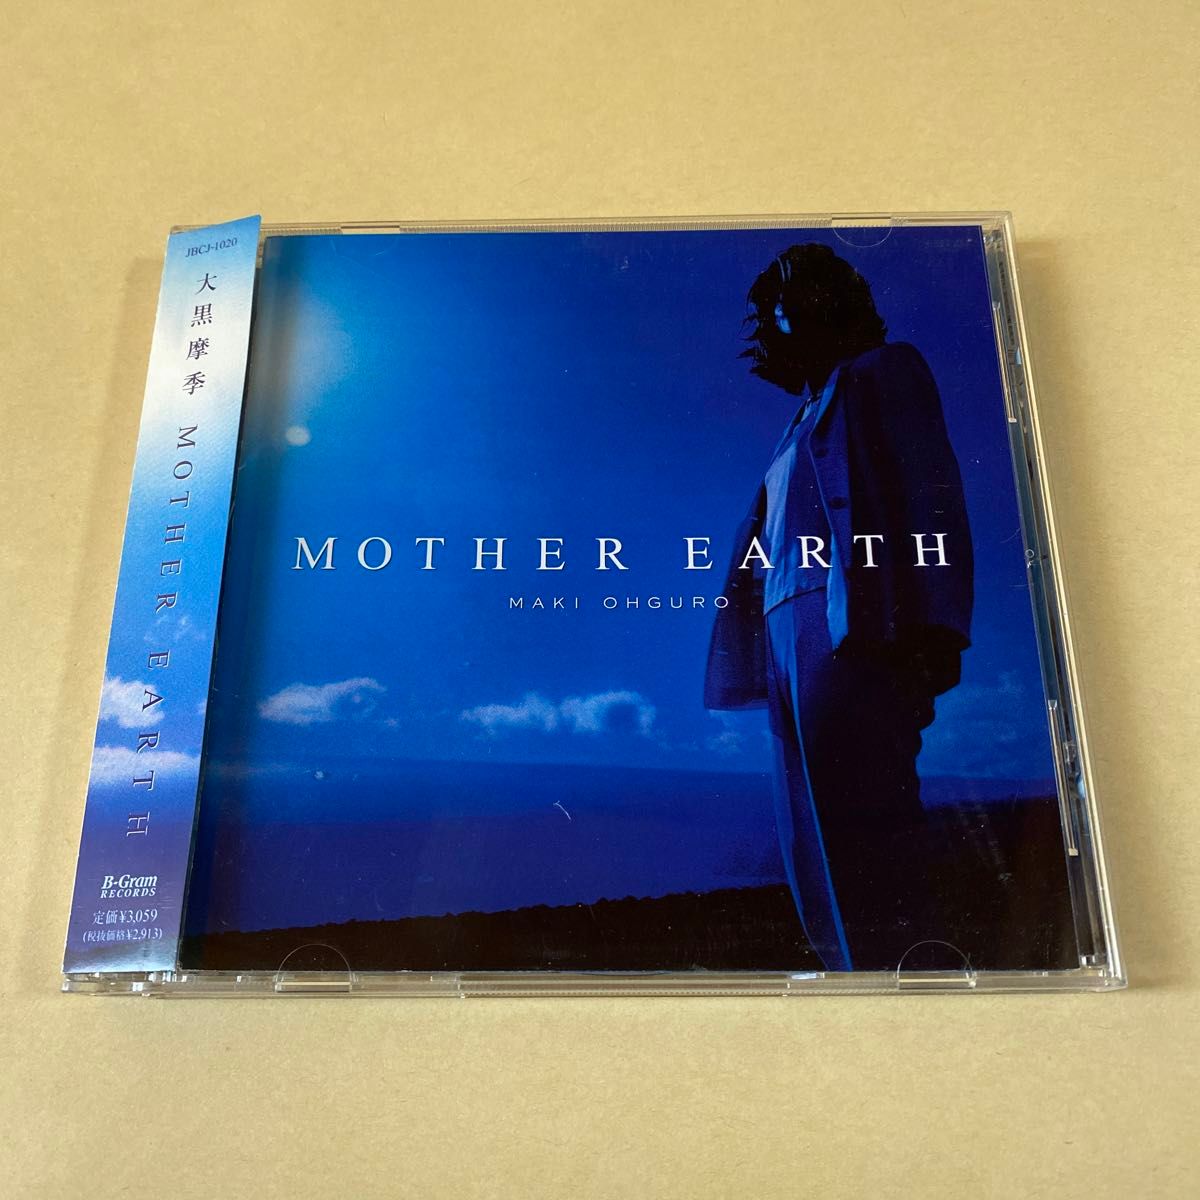 大黒摩季 1CD「MOTHER EARTH」